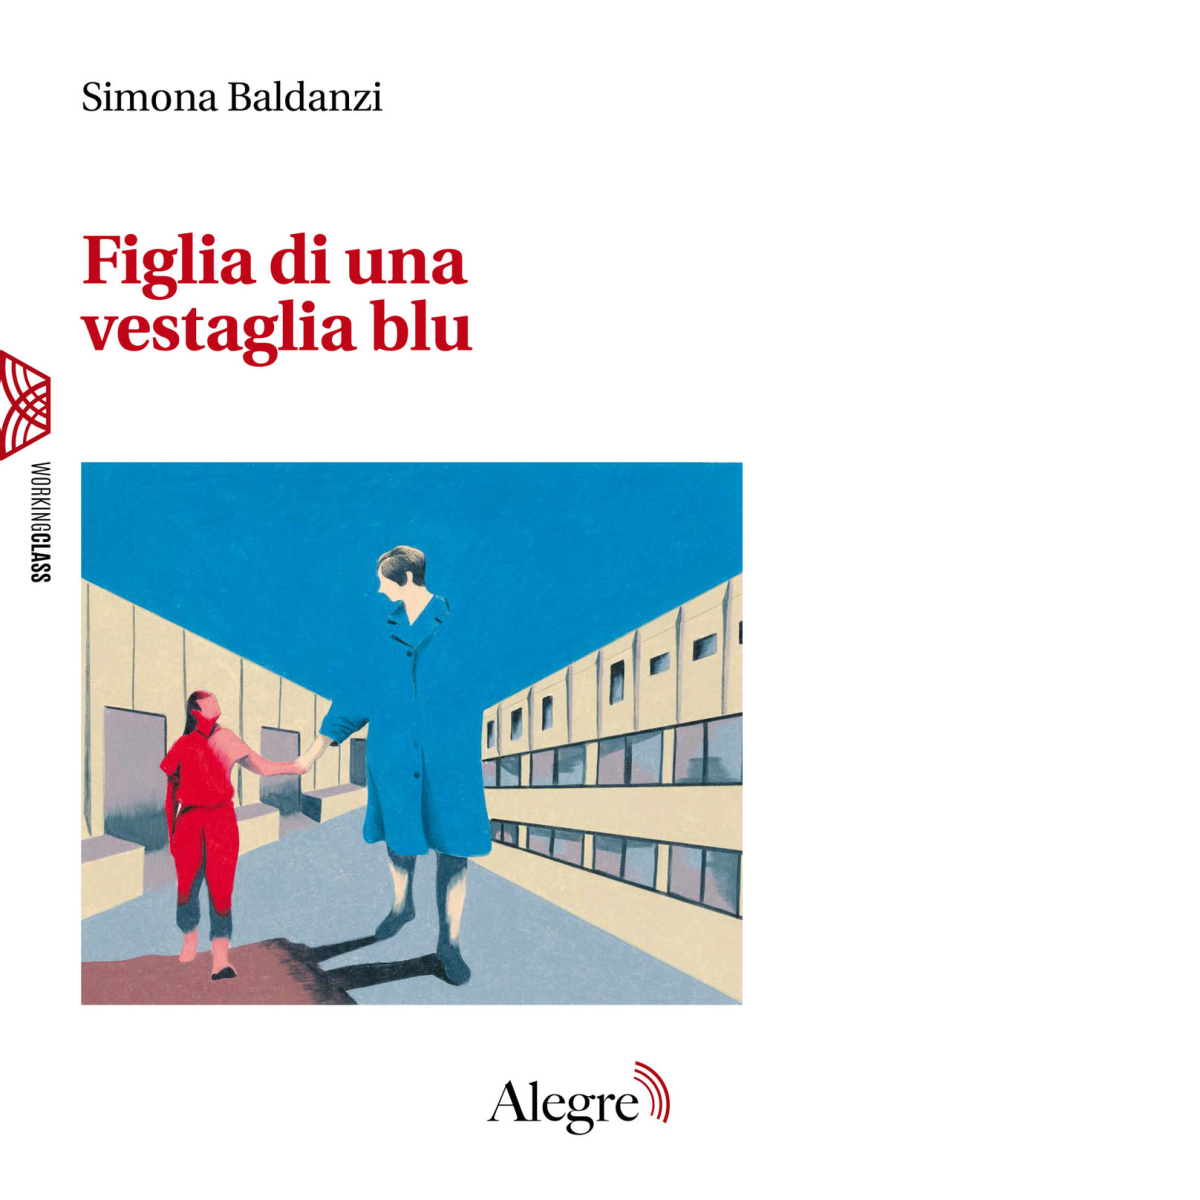 Figlia di una vestaglia blu di Simona Baldanzi - Edizioni Alegre, 2019